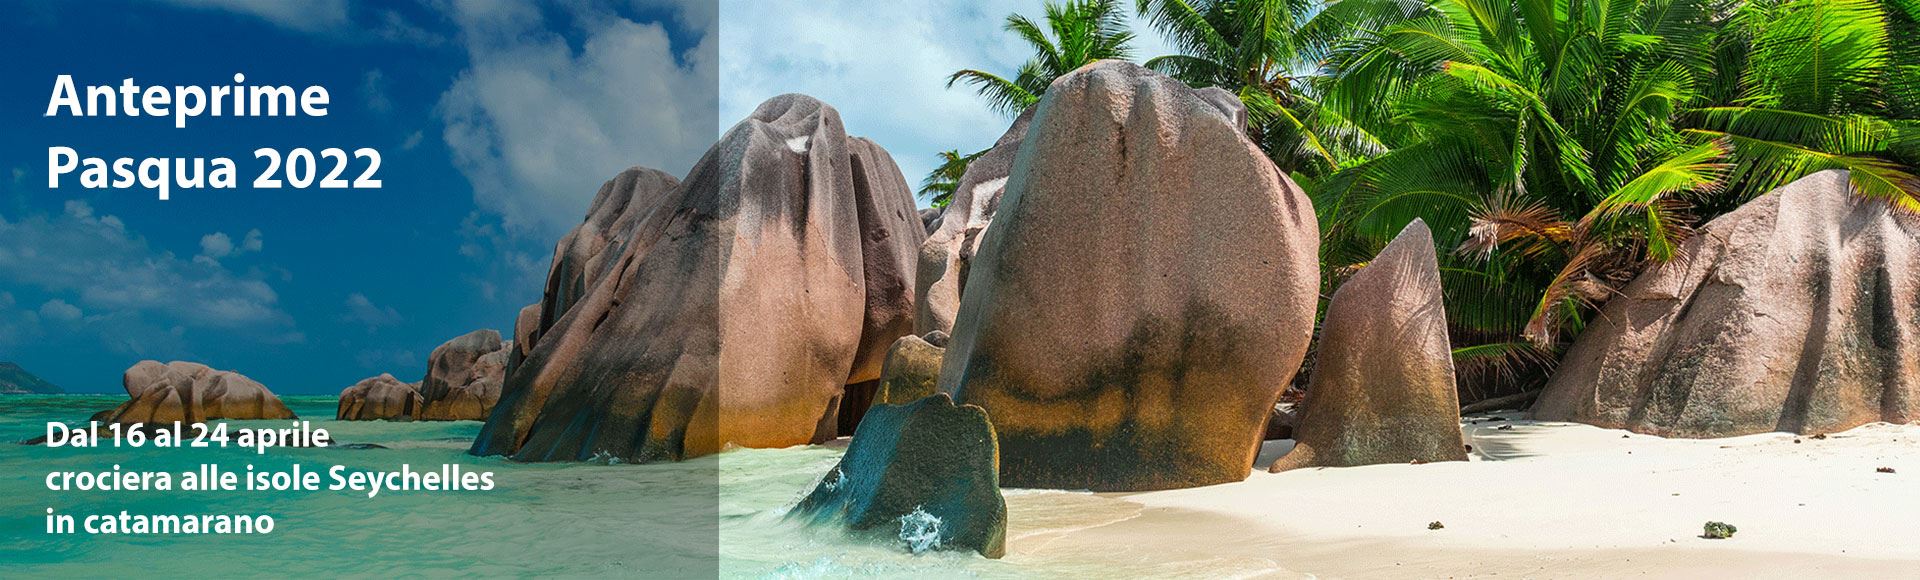 Pasqua 2022 alle isole Seychelles in catamarano con Mondovela